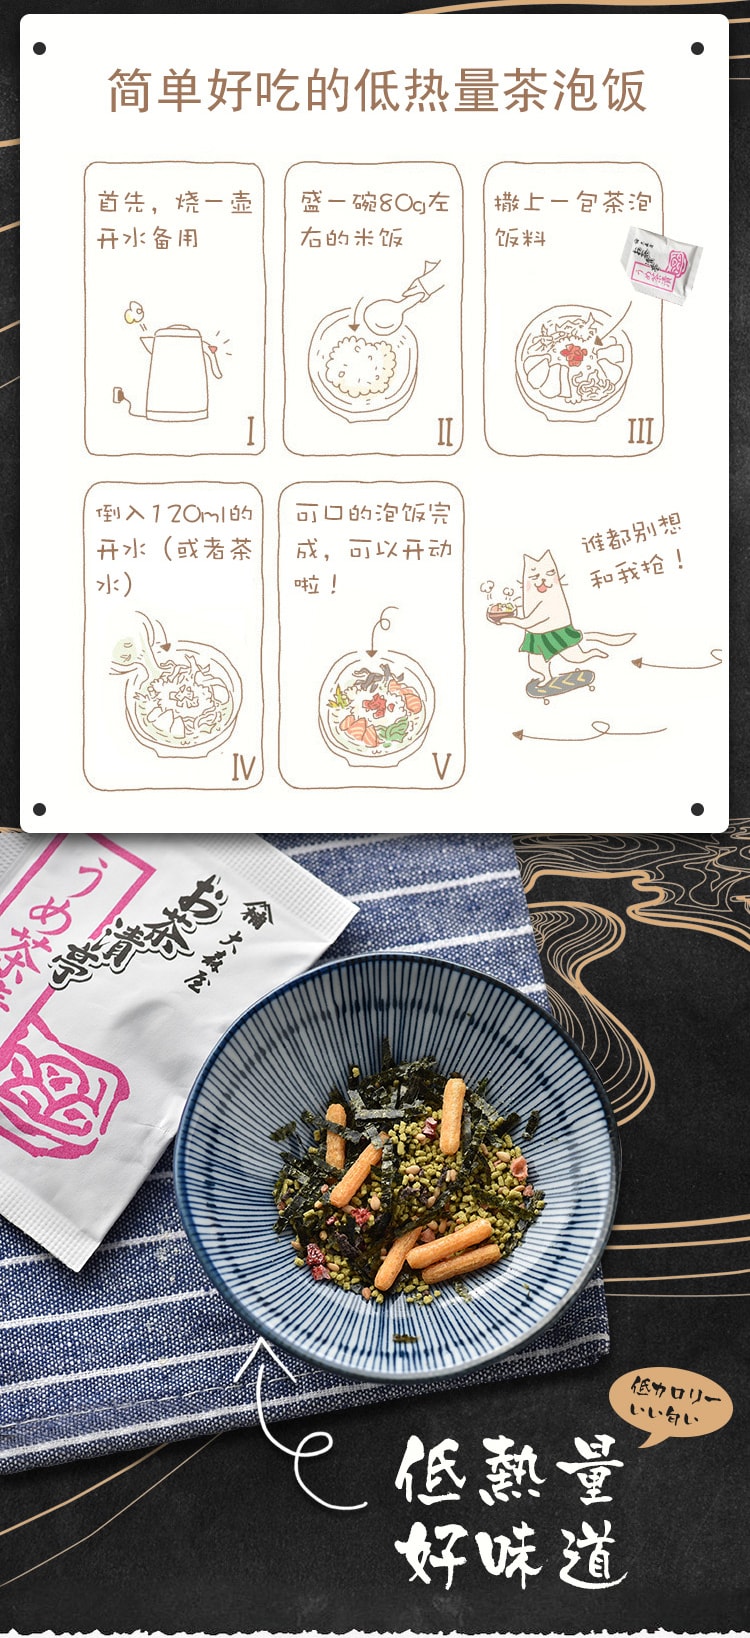 日本大森屋OHMORIYA鲑鱼茶泡饭 日式梅子海苔茶泡饭料包4味10袋 50g